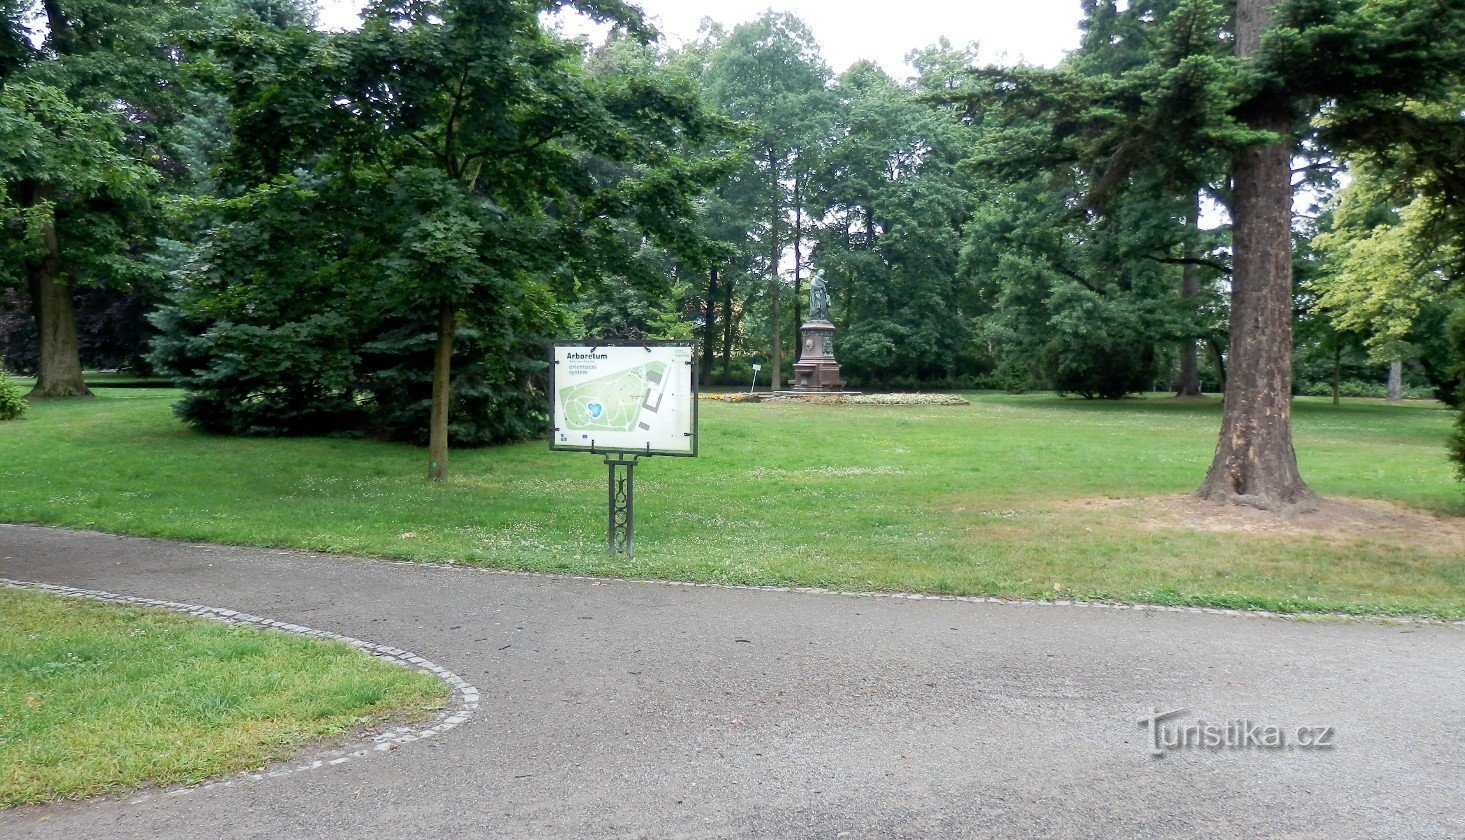 Oriëntatiebord met de aanduiding van geplante bomen en struiken, op de achtergrond het beeld van Mateřsk